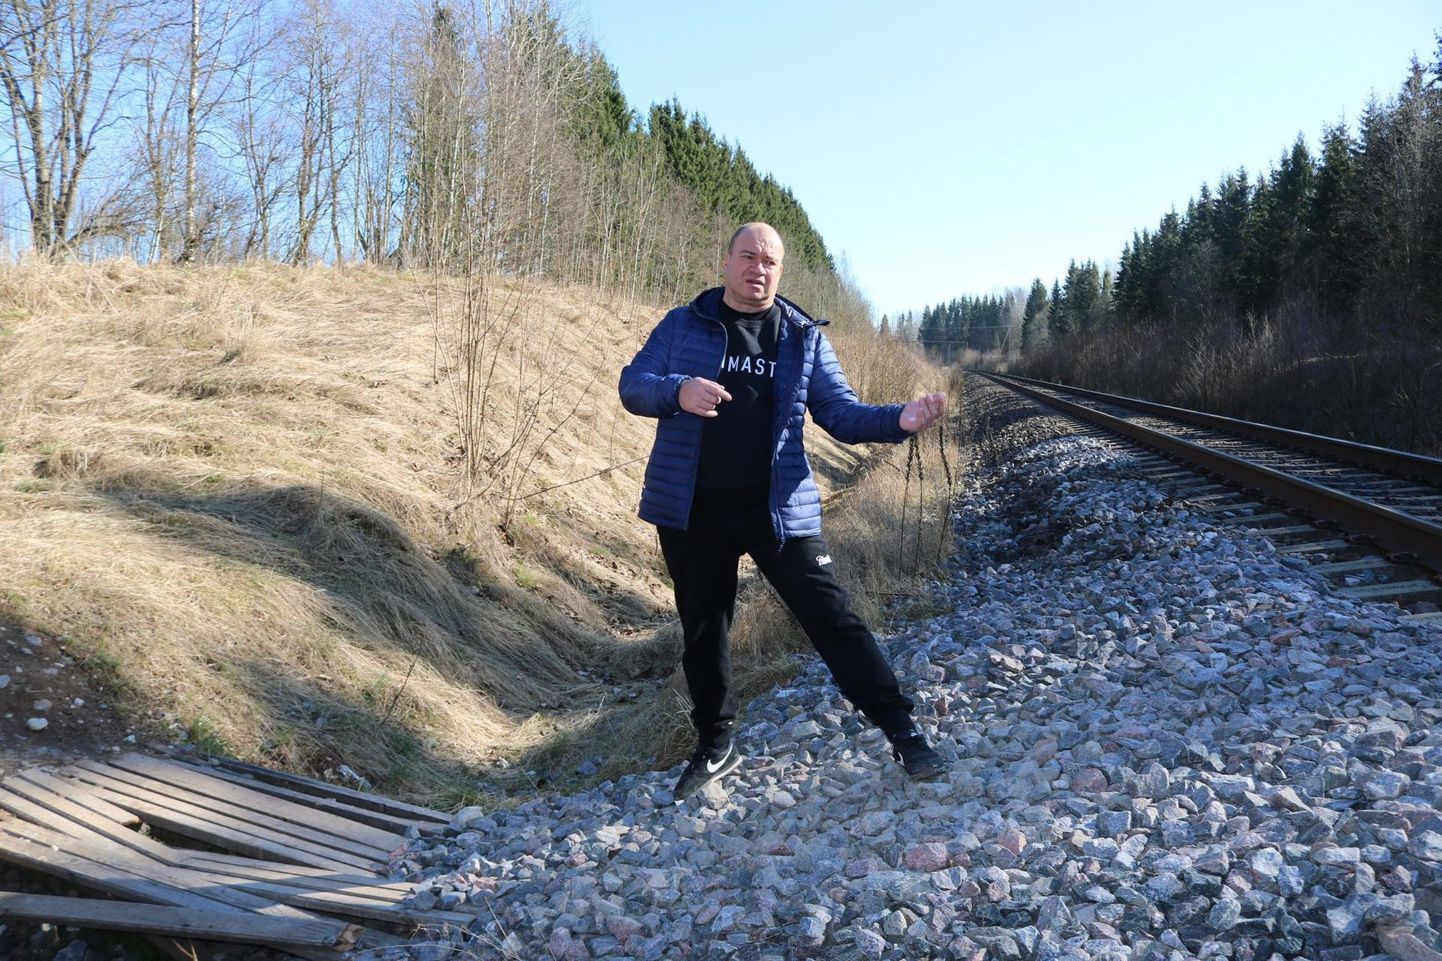 Himmaste külavanem Andres Vijar näitab üle raudtee Põlvasse viivat teed, mis muutus ohtlikuks pärast seda, kui Eesti Raudtee sellelt silla ära võttis.